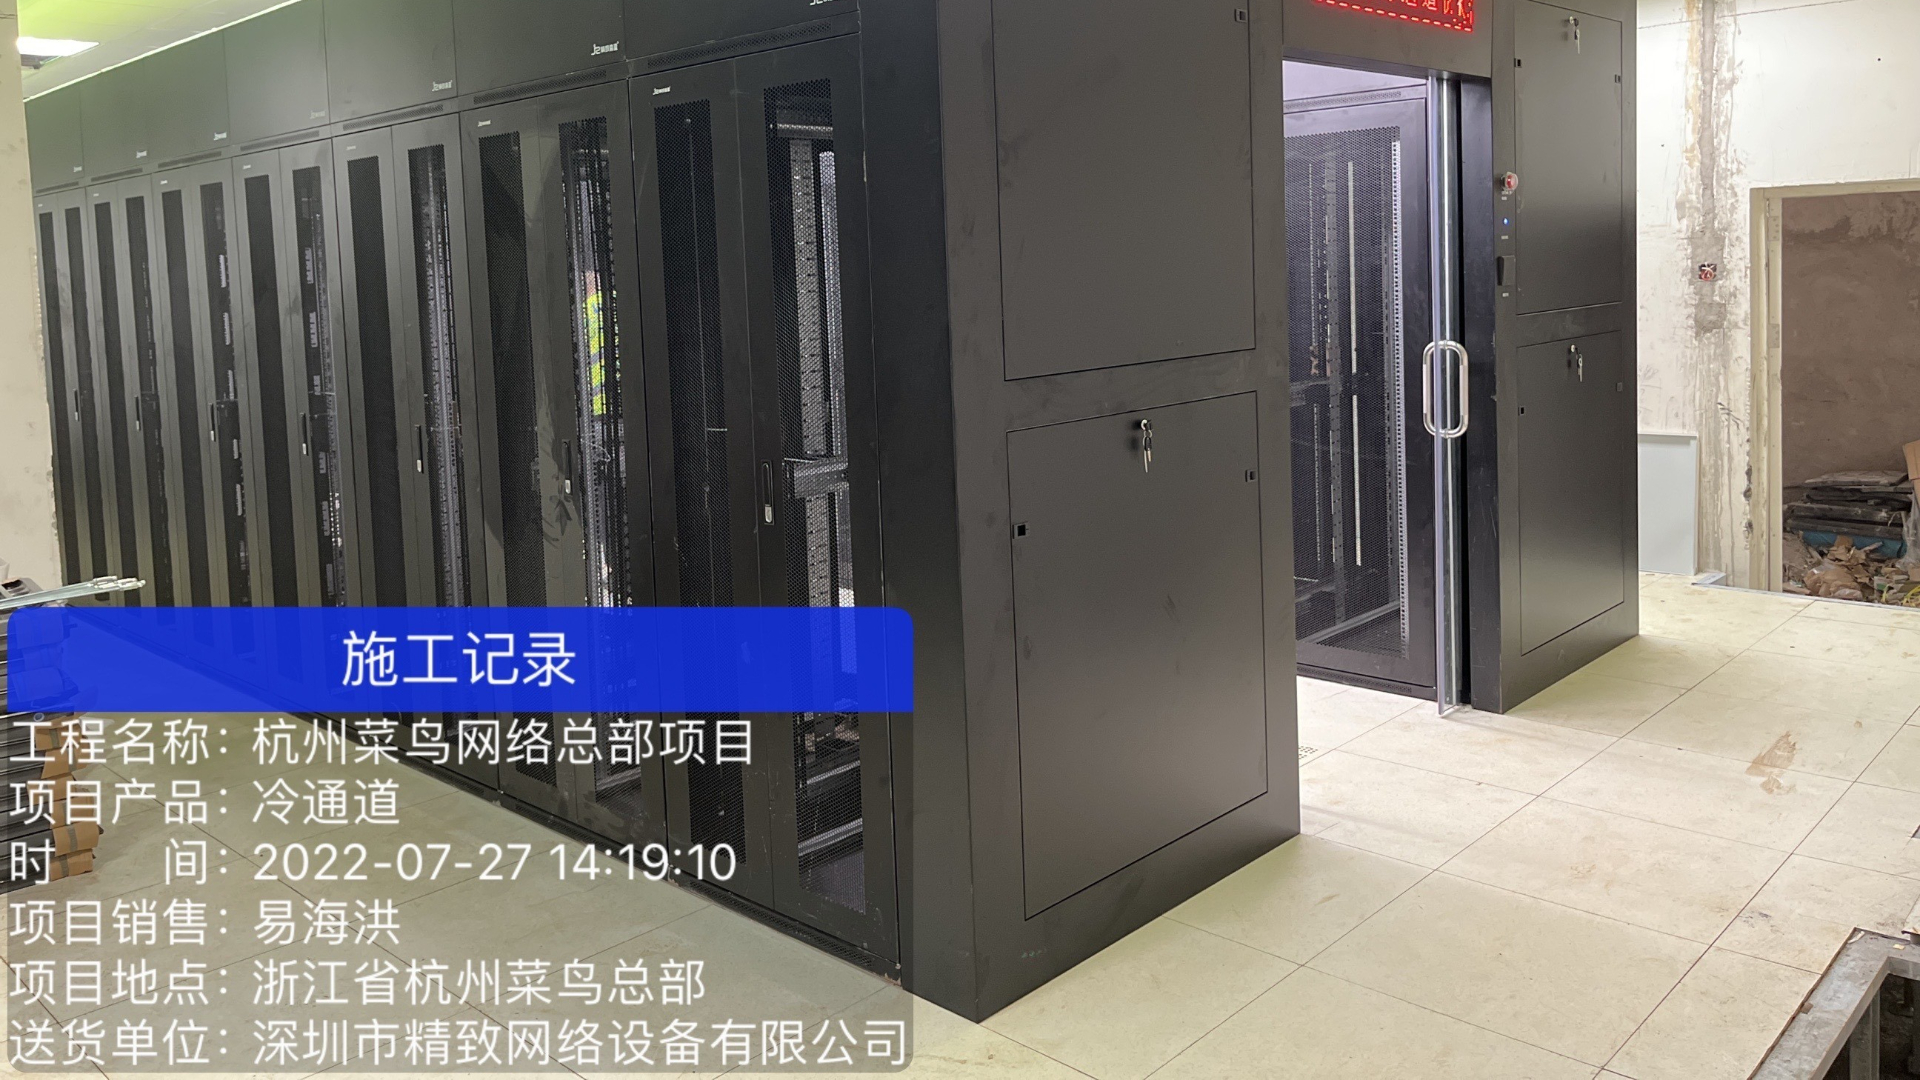 精致森蓝机柜为杭州阿里巴巴菜鸟网络总目项目二期冷通道机房完成安装调试